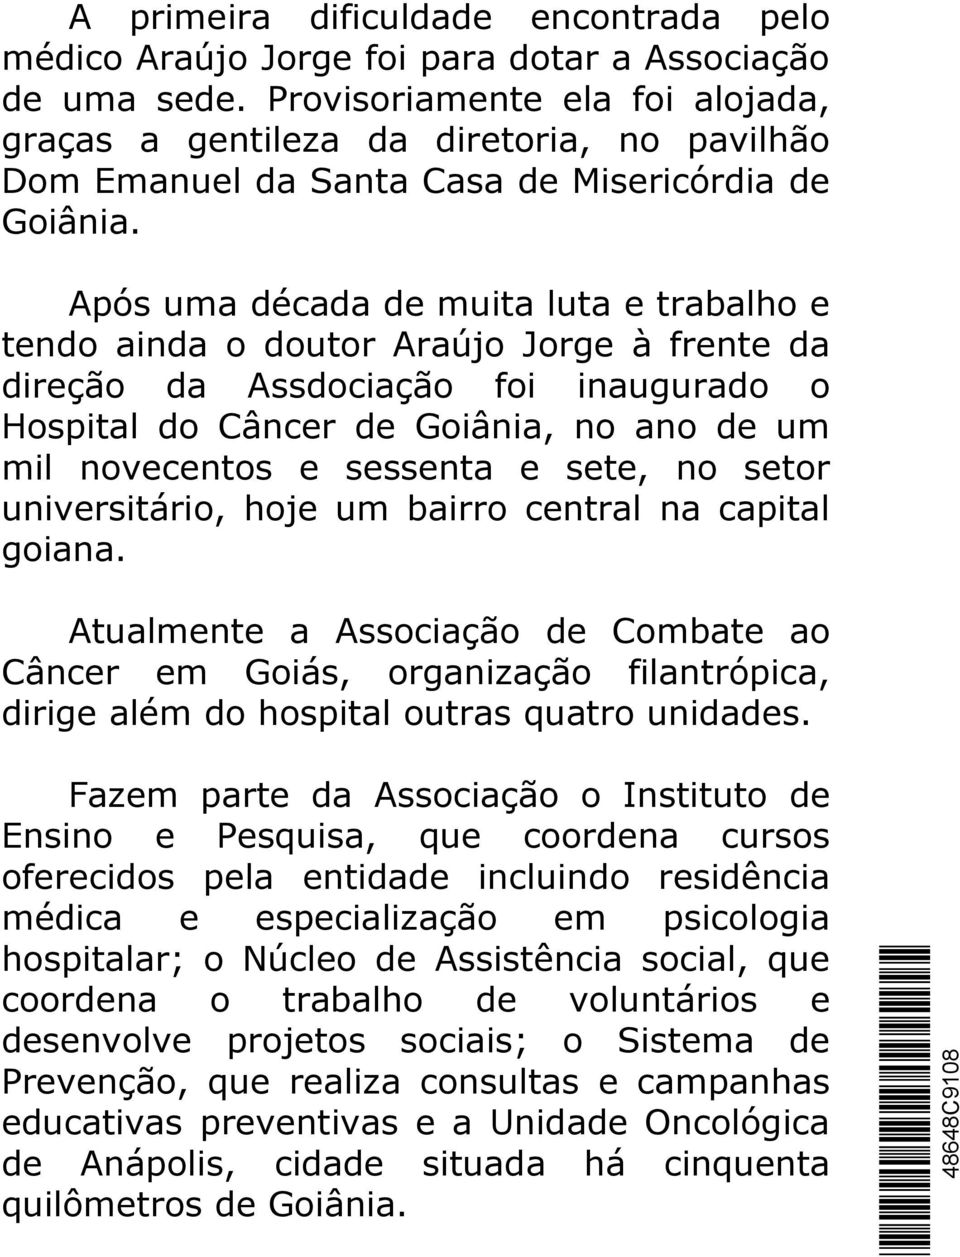 Após uma década de muita luta e trabalho e tendo ainda o doutor Araújo Jorge à frente da direção da Assdociação foi inaugurado o Hospital do Câncer de Goiânia, no ano de um mil novecentos e sessenta